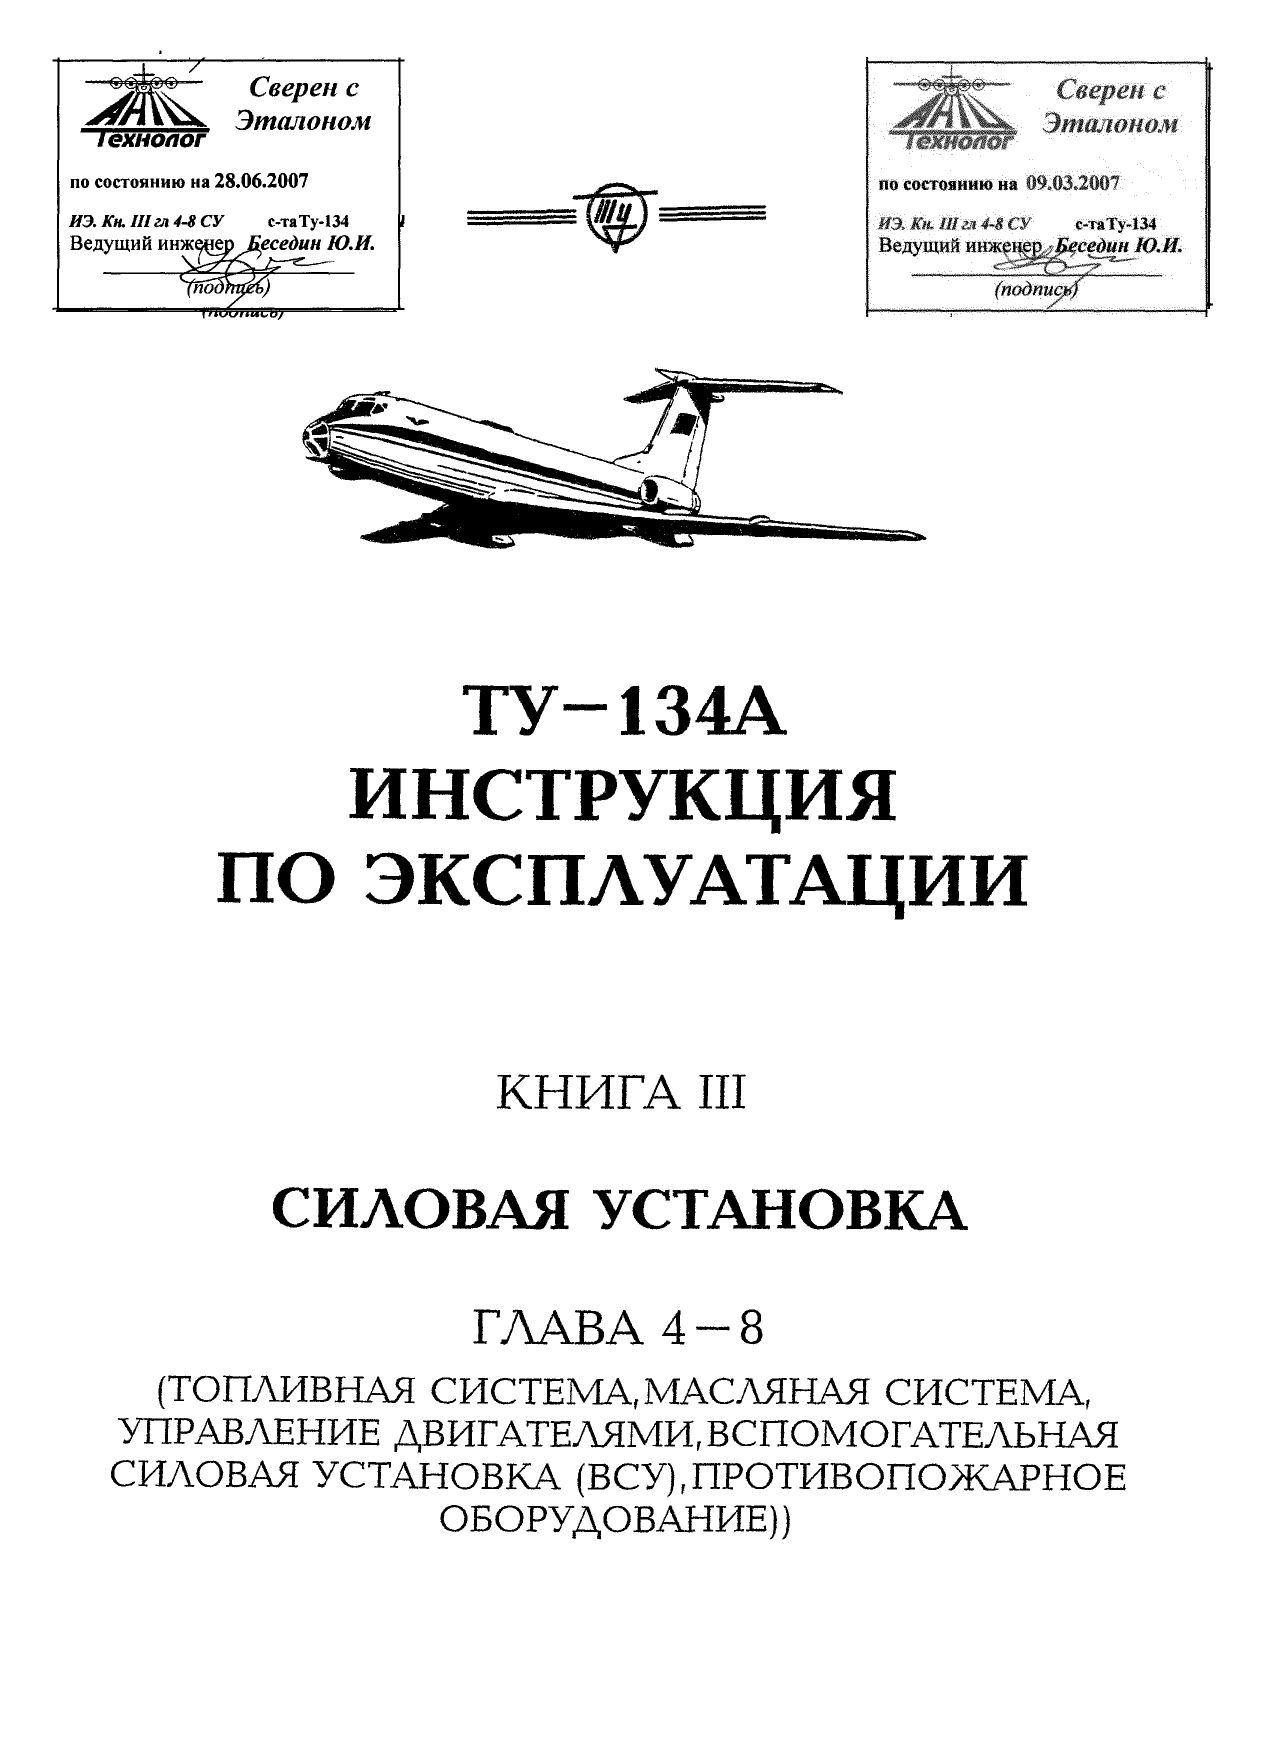 Tu-134_IYE_kn3_ch2_002